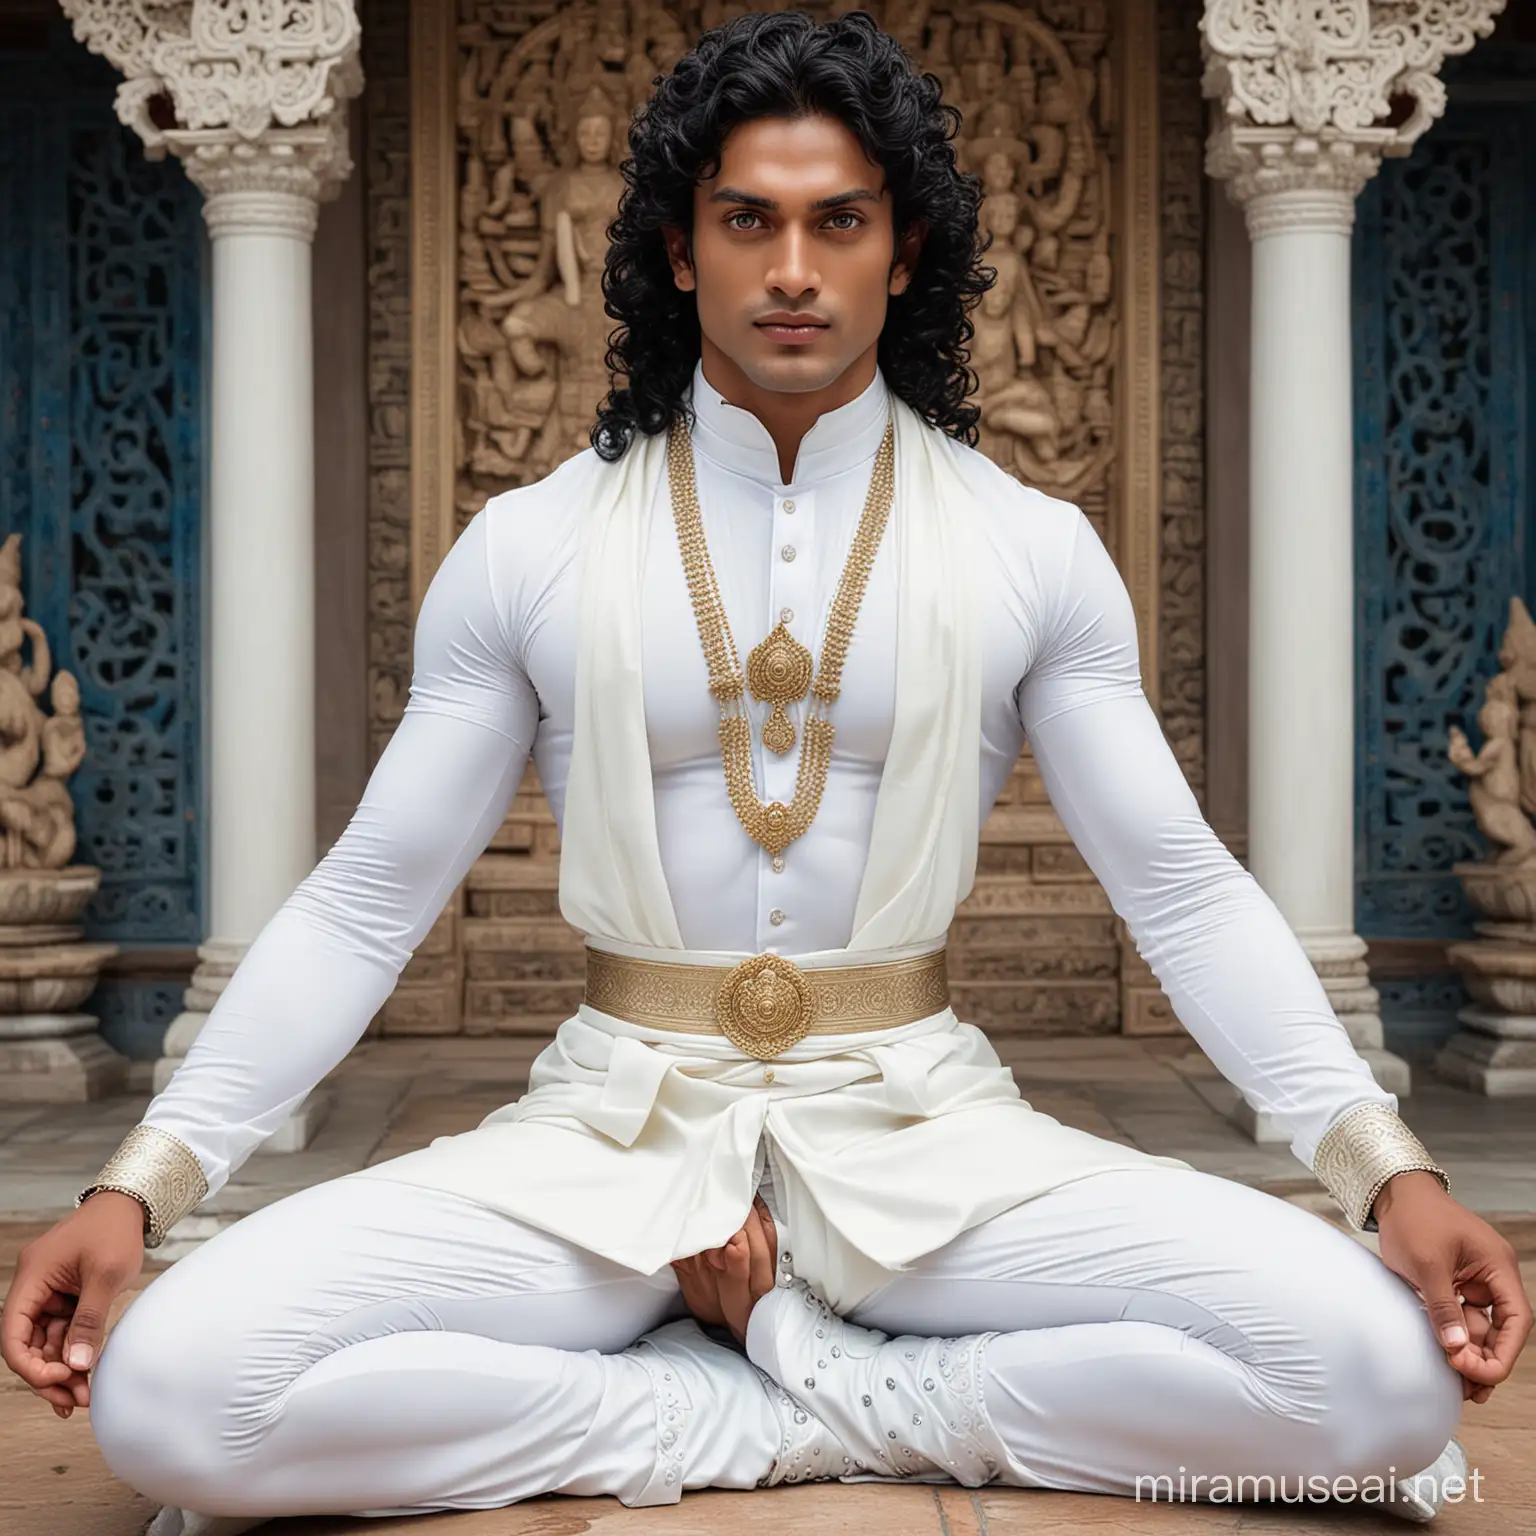 Dios hindu hermoso musculoso guapo alto, de cabellos negros rizados y ojos azules, sentado en posición flor de loto, vestido de blanco traje ajustado entallado con botas blancas y capa blanca larga  rodeado de diosas hindus y un monasterio tibetano 